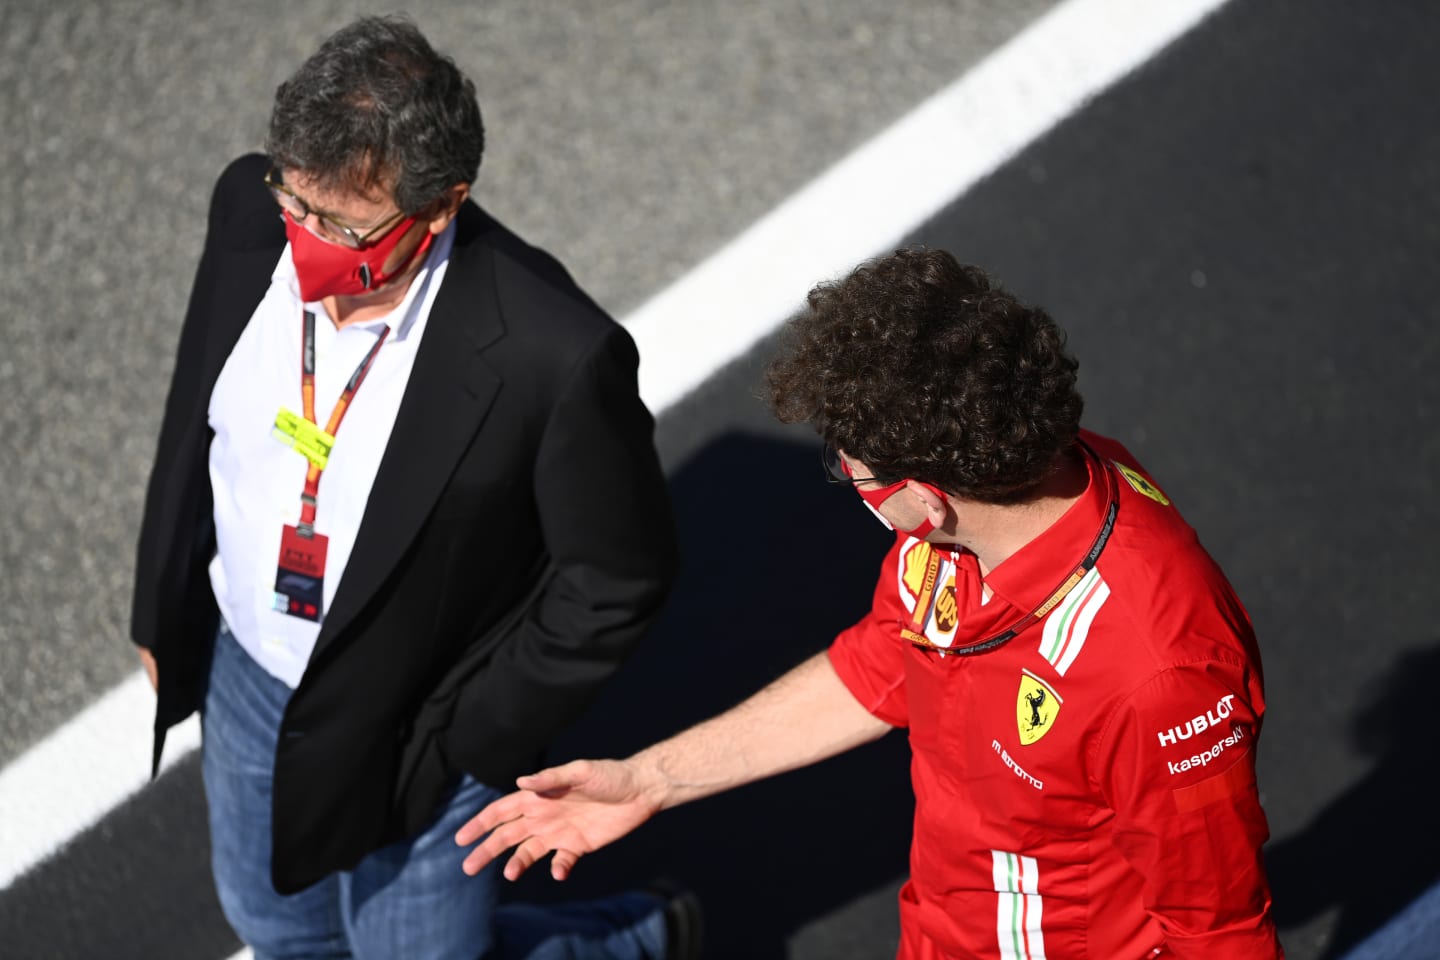 SCARPERIA, ITALY - SEPTEMBER 13: Scuderia Ferrari Team Principal Mattia Binotto and Ferrari CEO